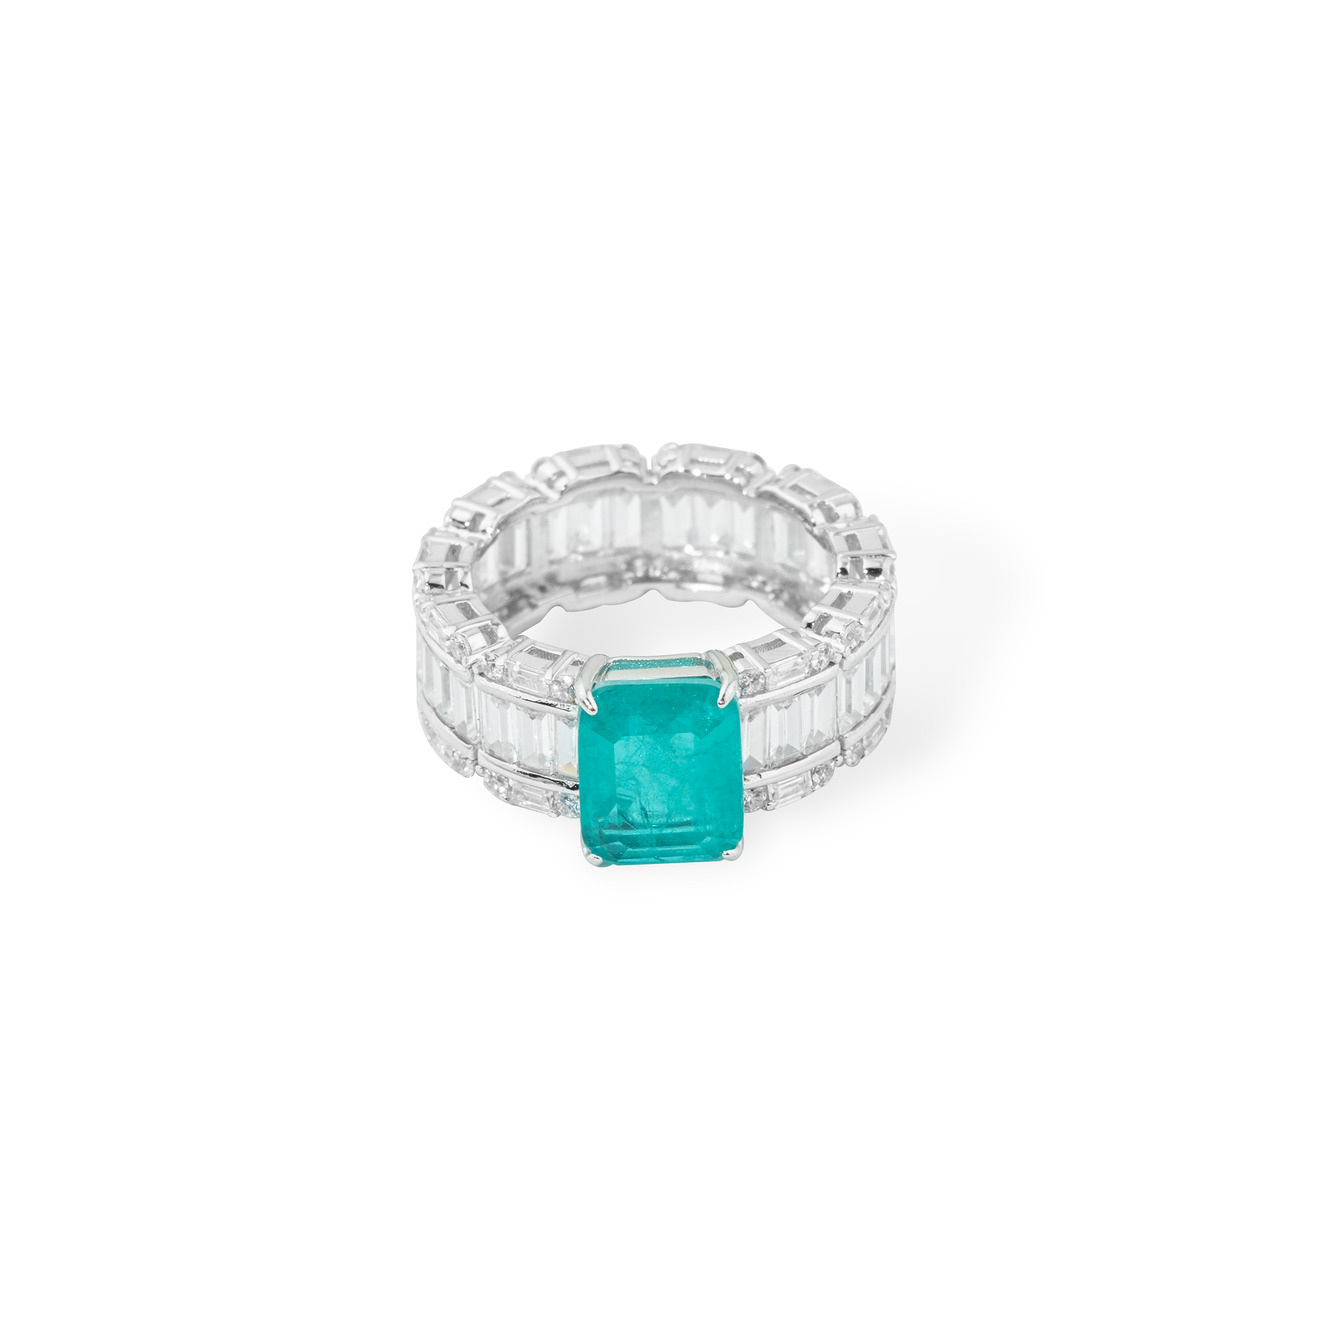 holy silver серебряное кольцо с розовым кристаллом Holy Silver Серебряное кольцо с зеленым кристаллом и паве из белых кристаллов огранки багет